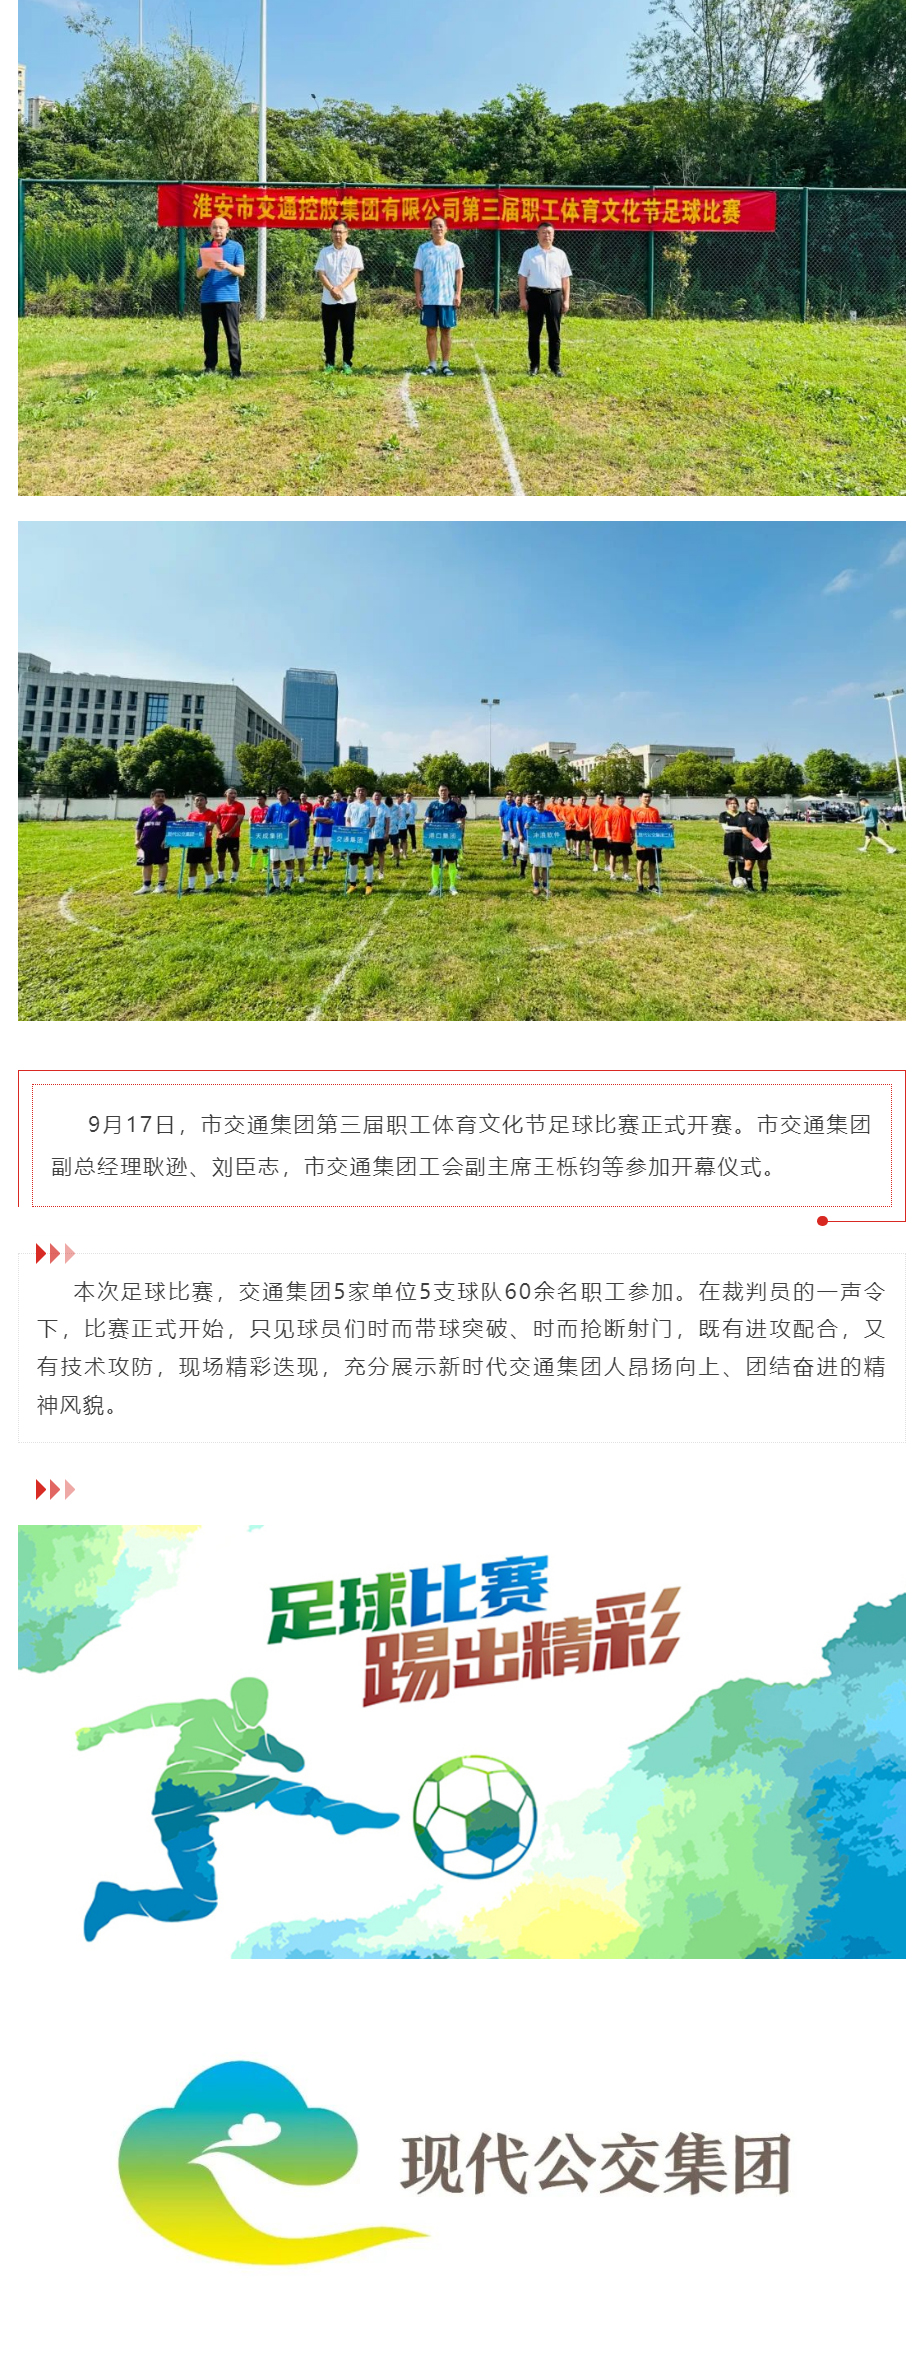 市交通集团第三届职工体育文化节足球比赛正式开赛